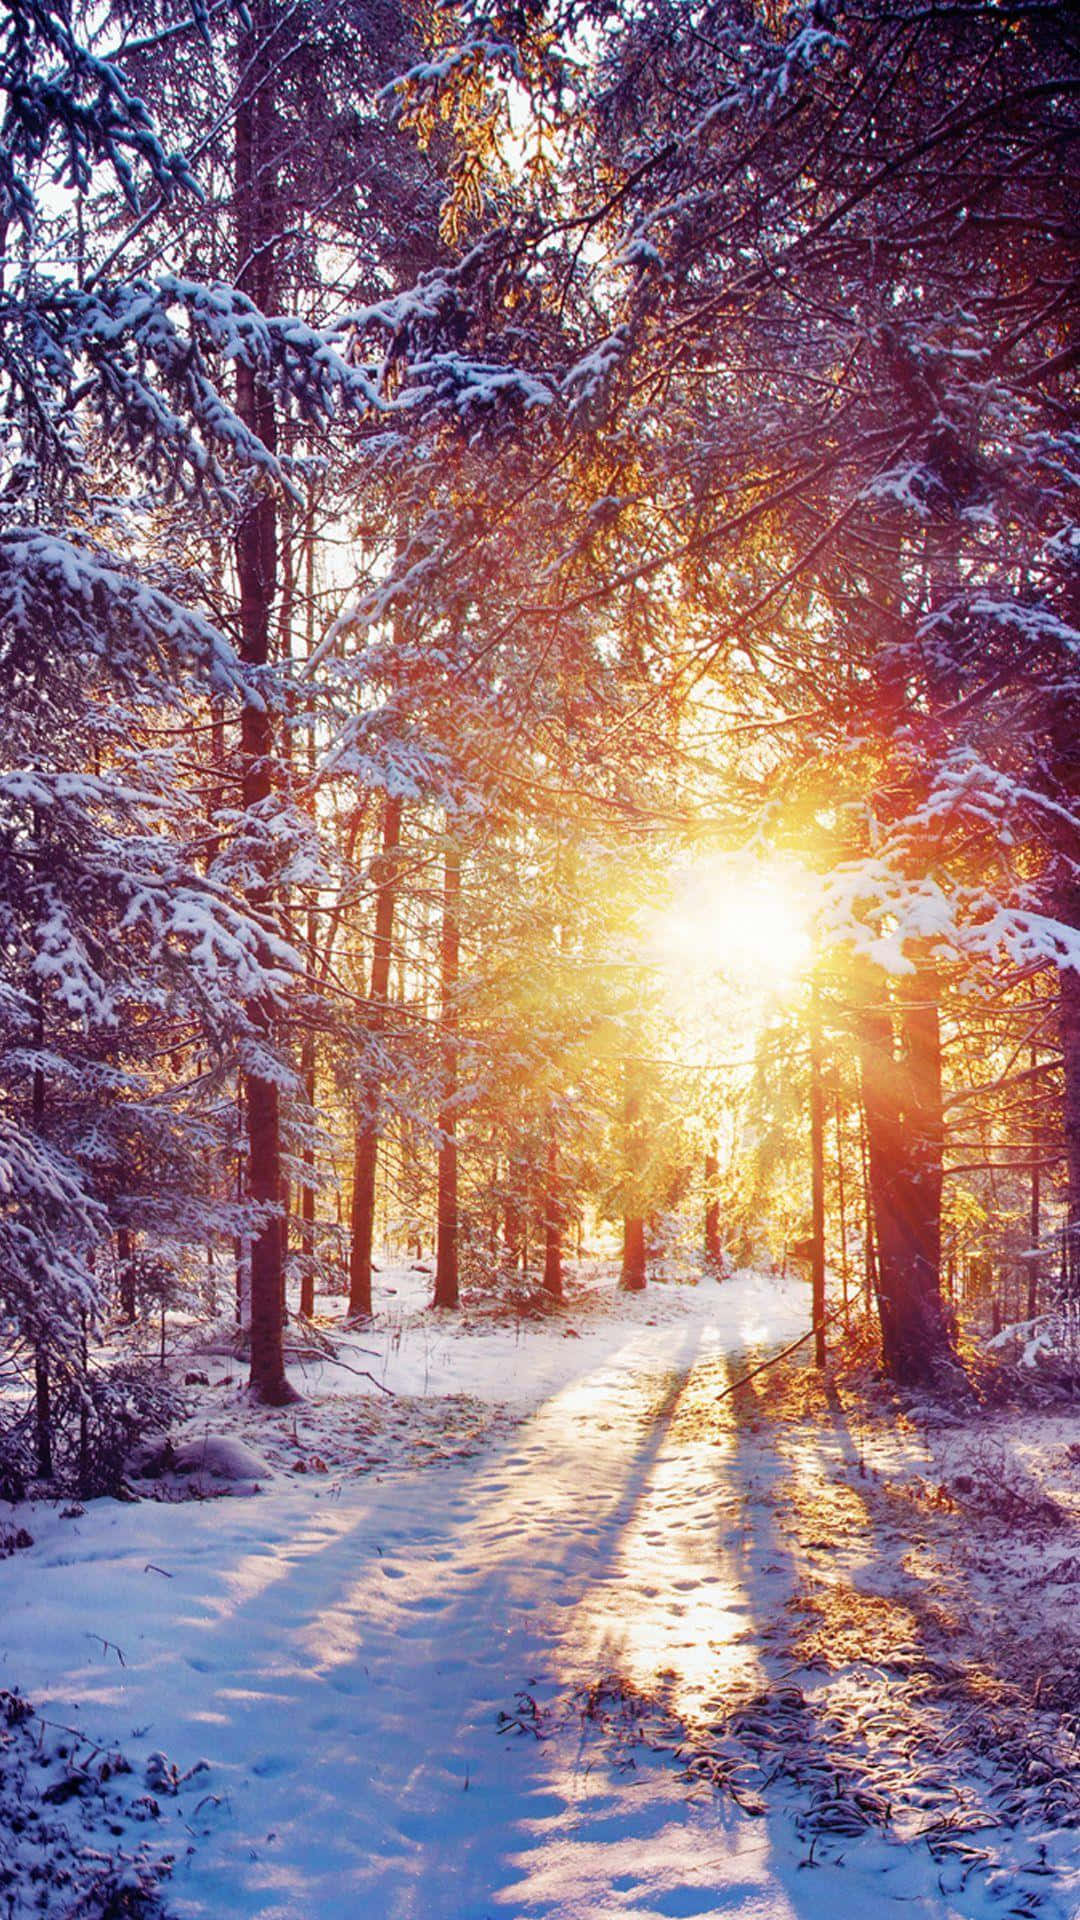 Einschneebedeckter Weg In Einem Wald, Mit Der Sonne, Die Durch Die Bäume Scheint. Wallpaper